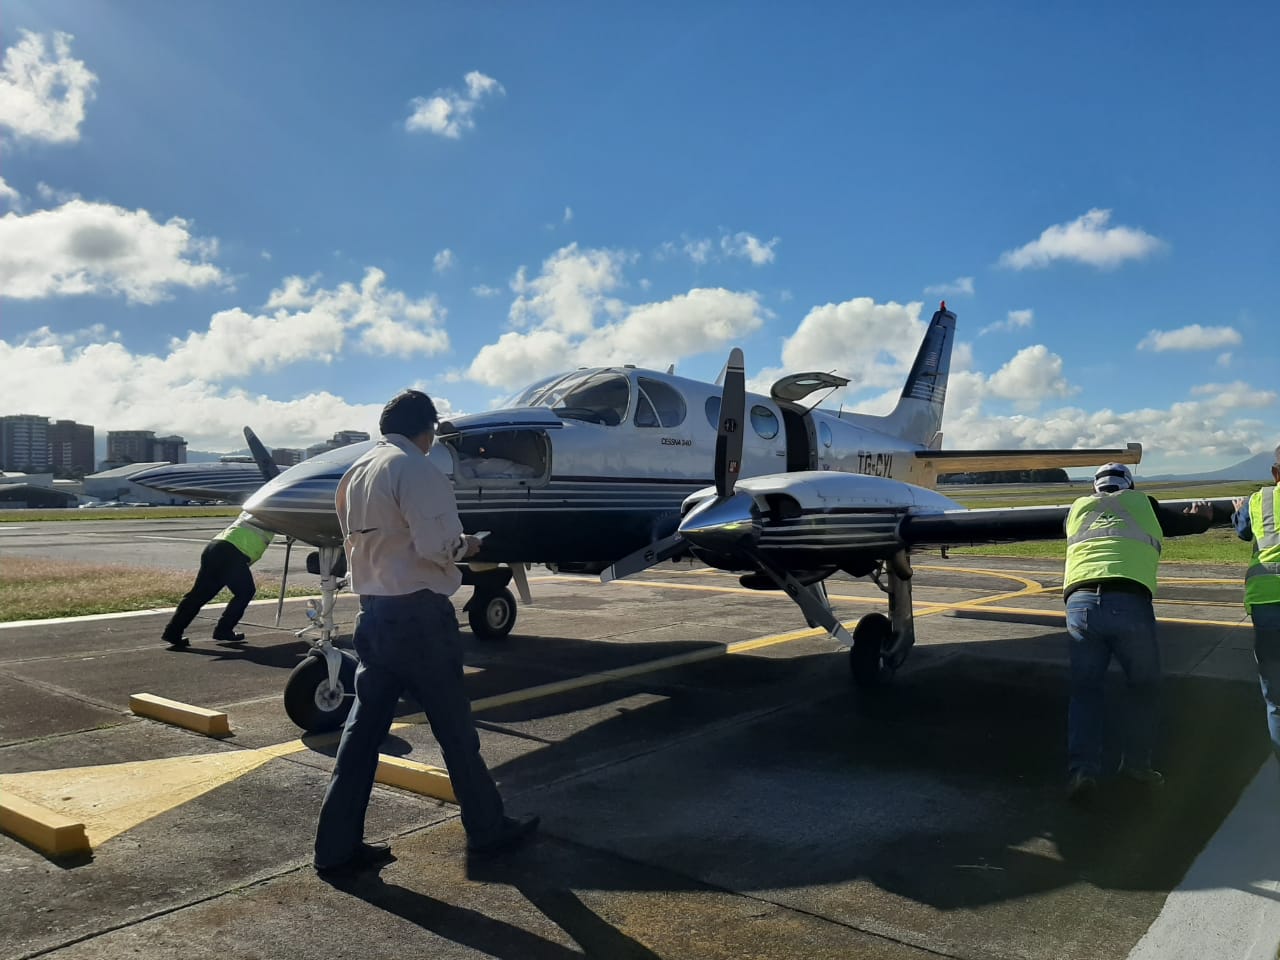 El centro de acopio del Aeroclub de Guatemala logra trasladar ayuda humanitaria vía aérea a comunidades damnificadas. (Foto Prensa Libre: Guatevisión)